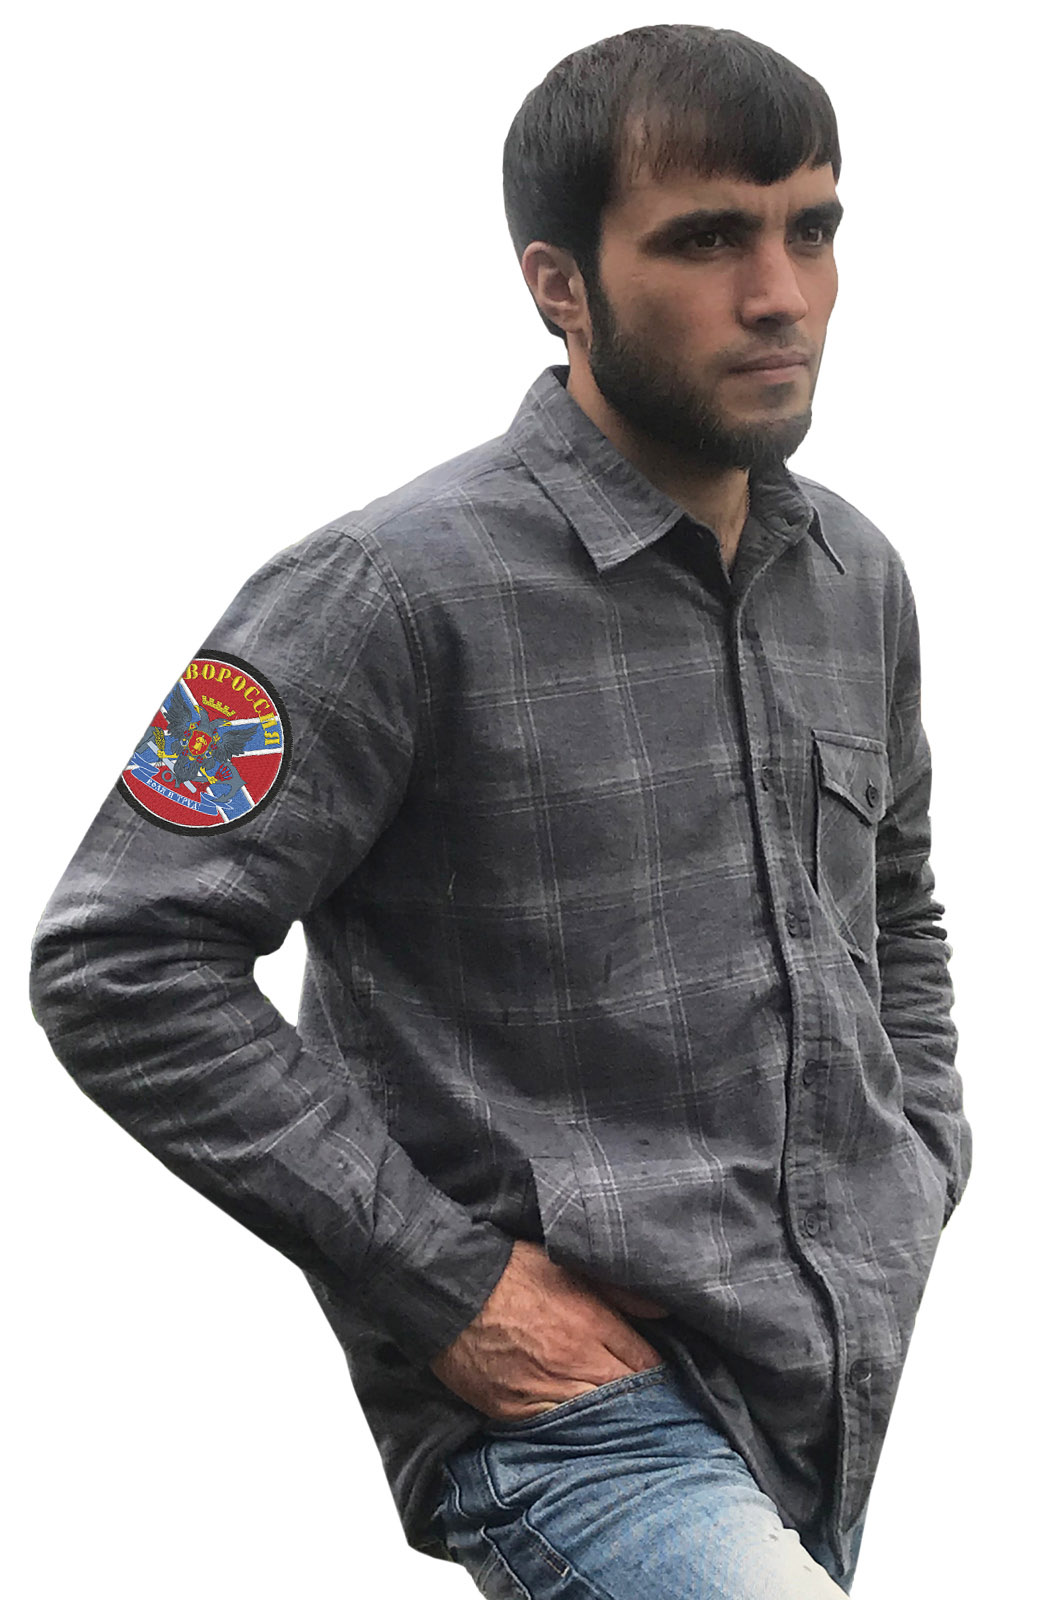 Купить крутую мужскую рубашку с вышитым флагом и гербом Новороссии онлайн с доставкой